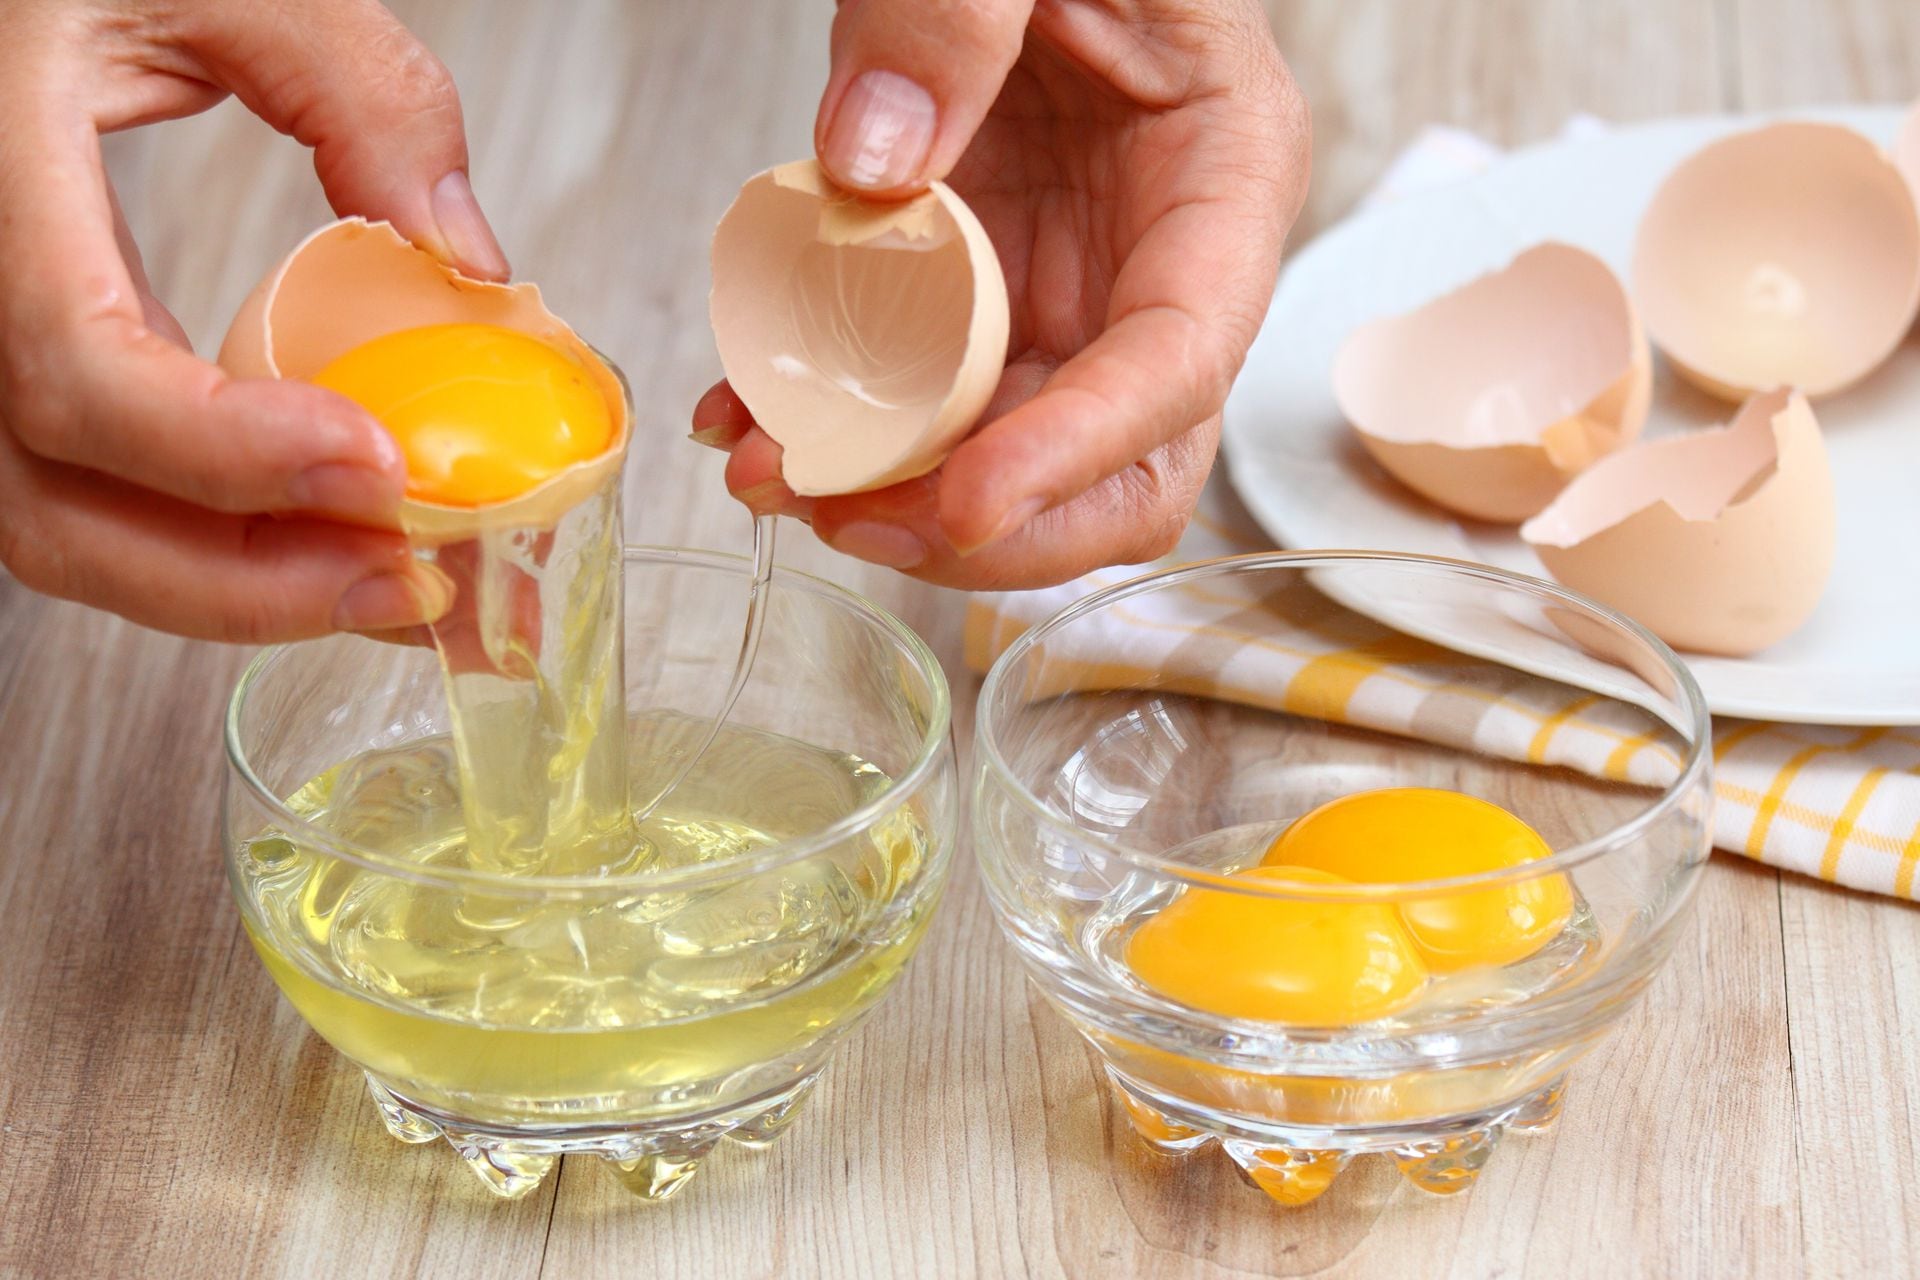 Cómo cocinar huevos en el microondas